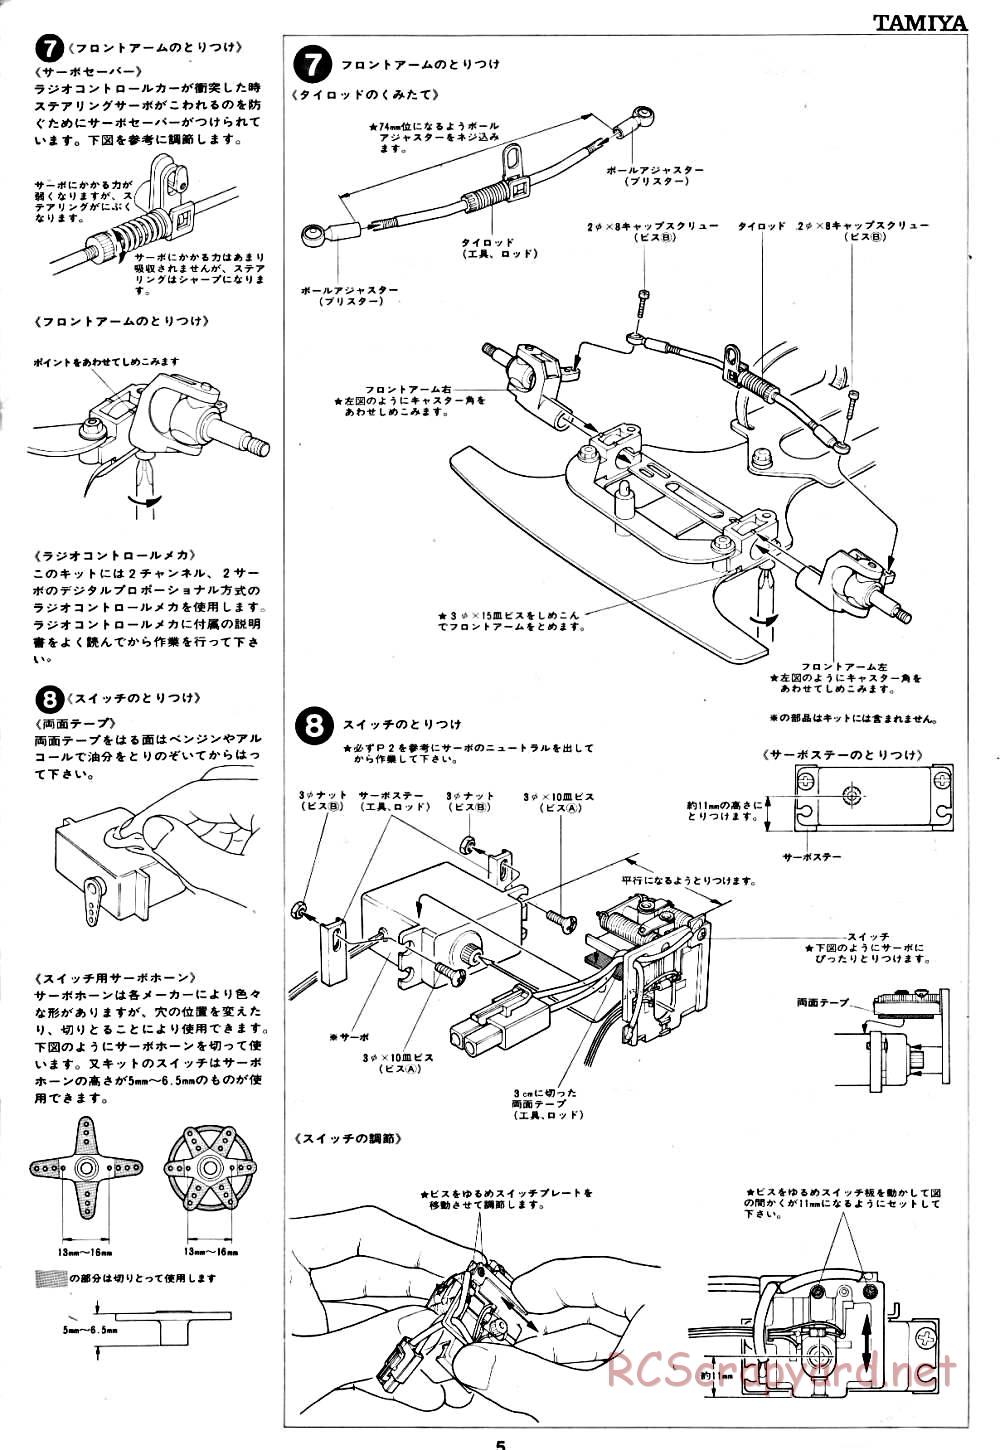 Tamiya - Tornado - RM MK.3 - 58032 - Manual - Page 5